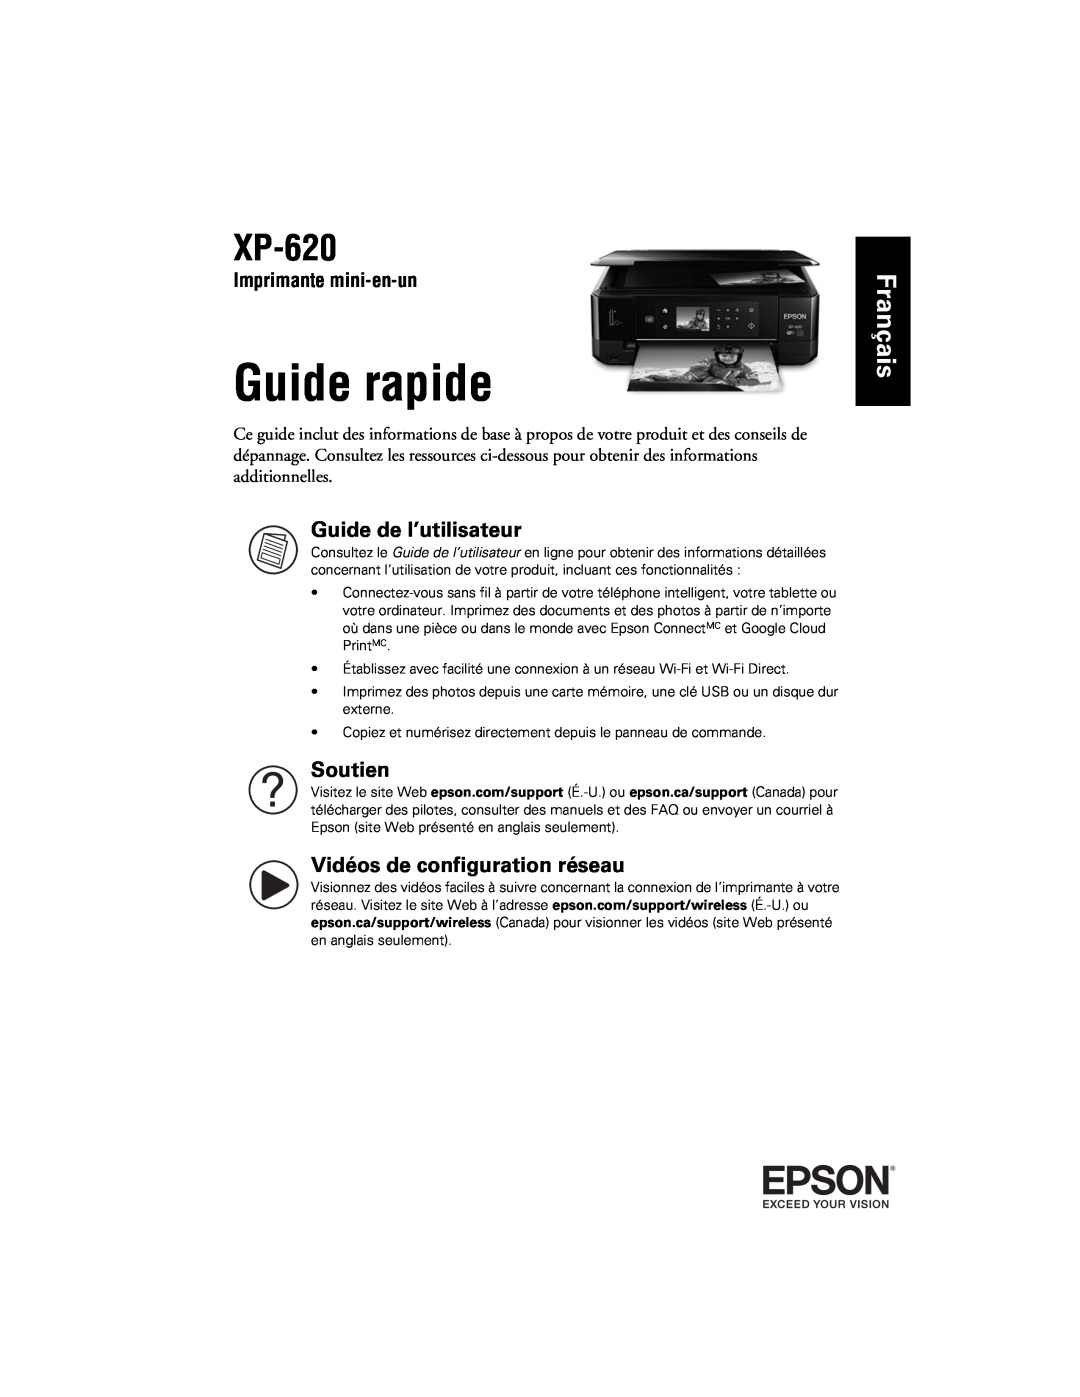 Epson XP-620 manual Guide rapide, Français, Guide de l’utilisateur, Soutien, Vidéos de configuration réseau 